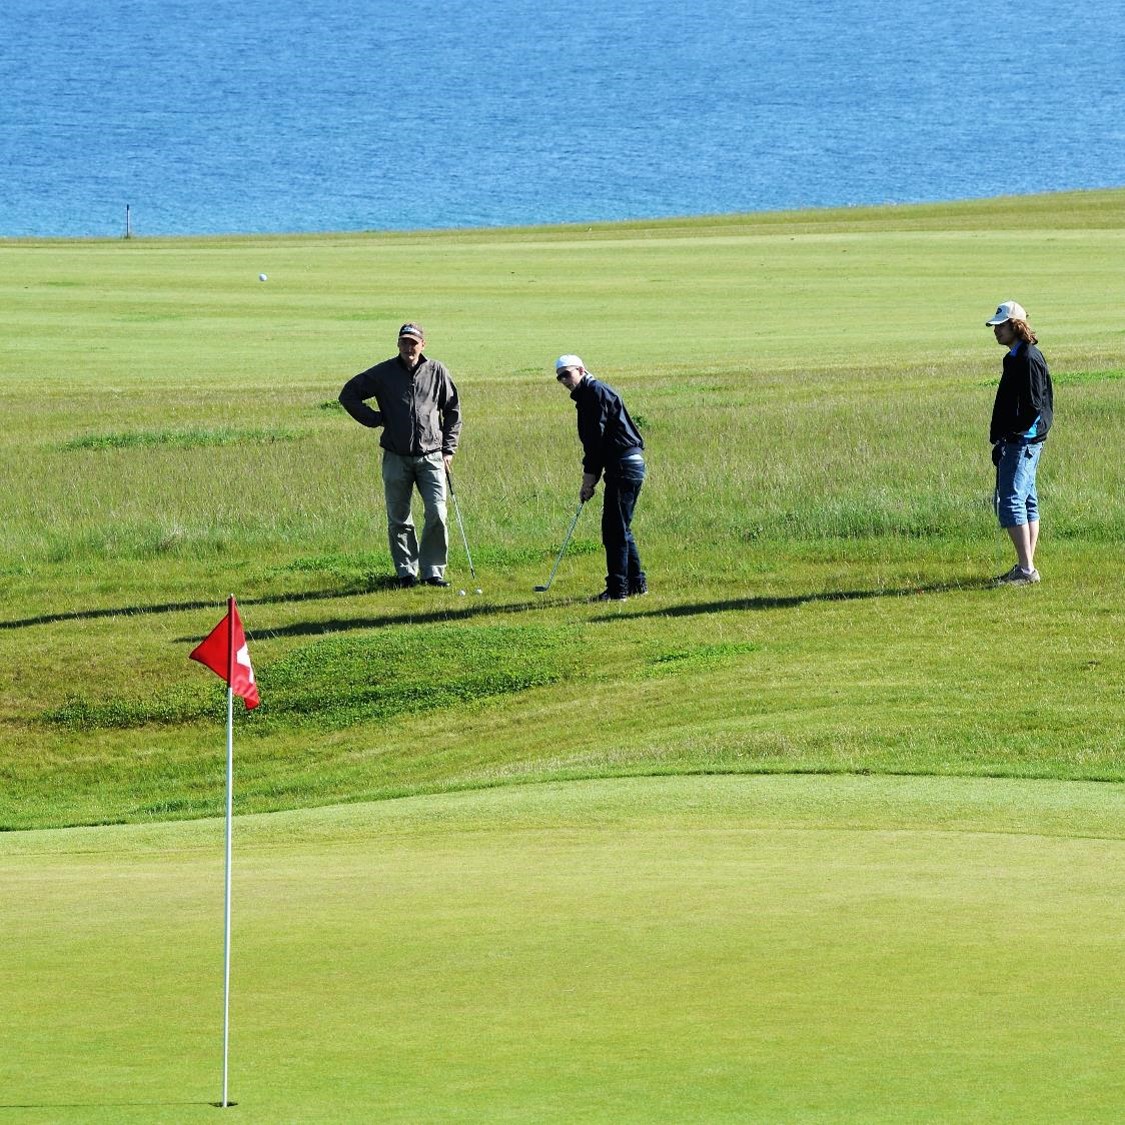 Spil golf en dag på Ærø med færgebilletter etc. inkluderet